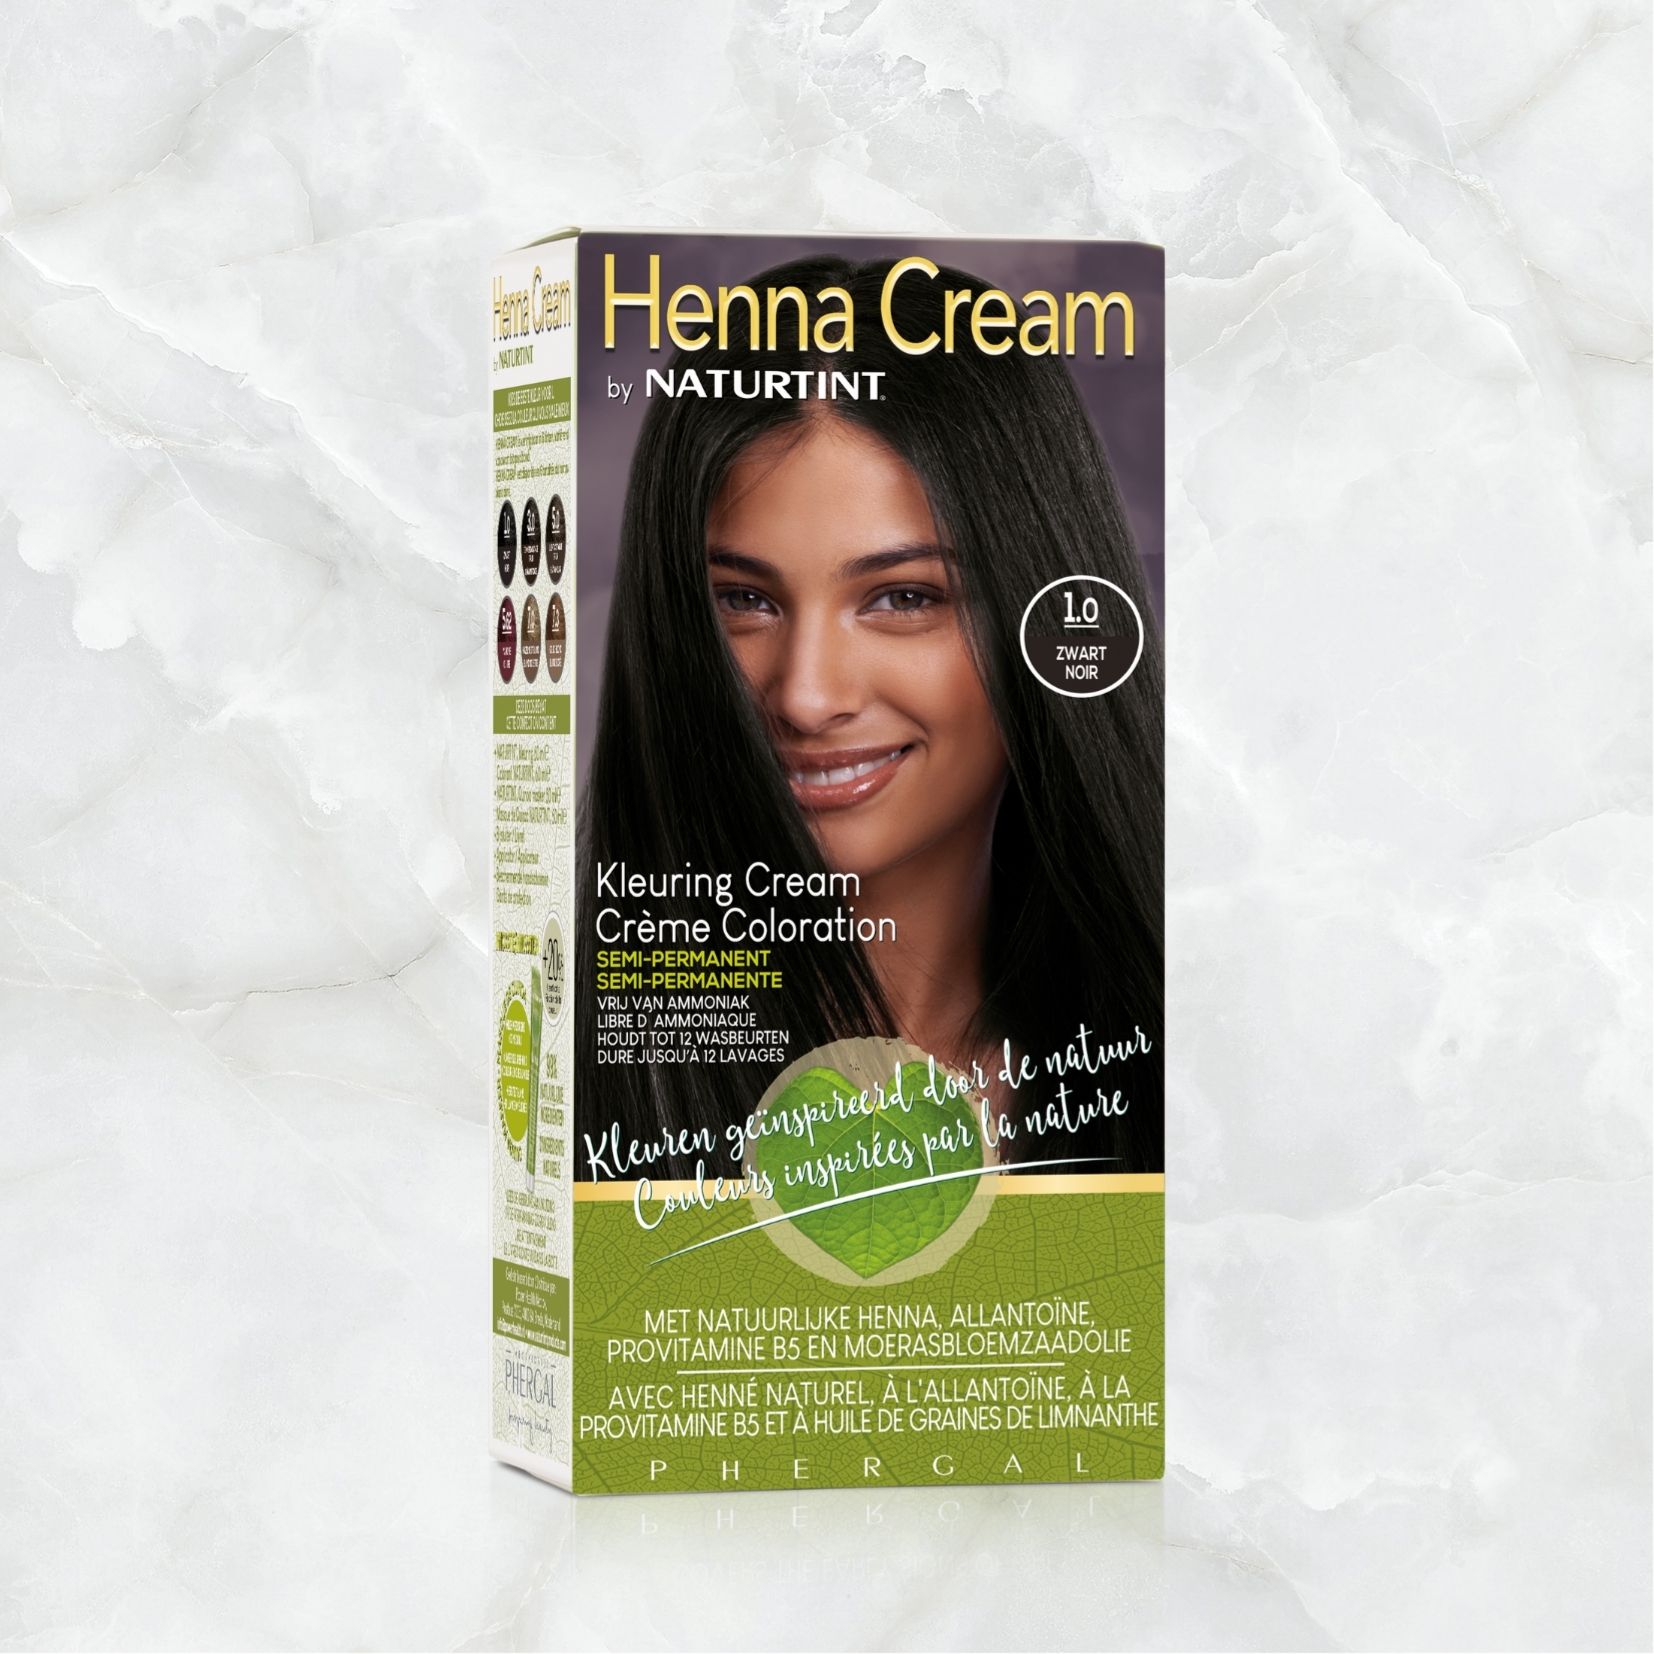 Ik geloof volleybal op vakantie Henna Cream 1.0 (Semi-Permanente Haarkleuring) - Power Health shop